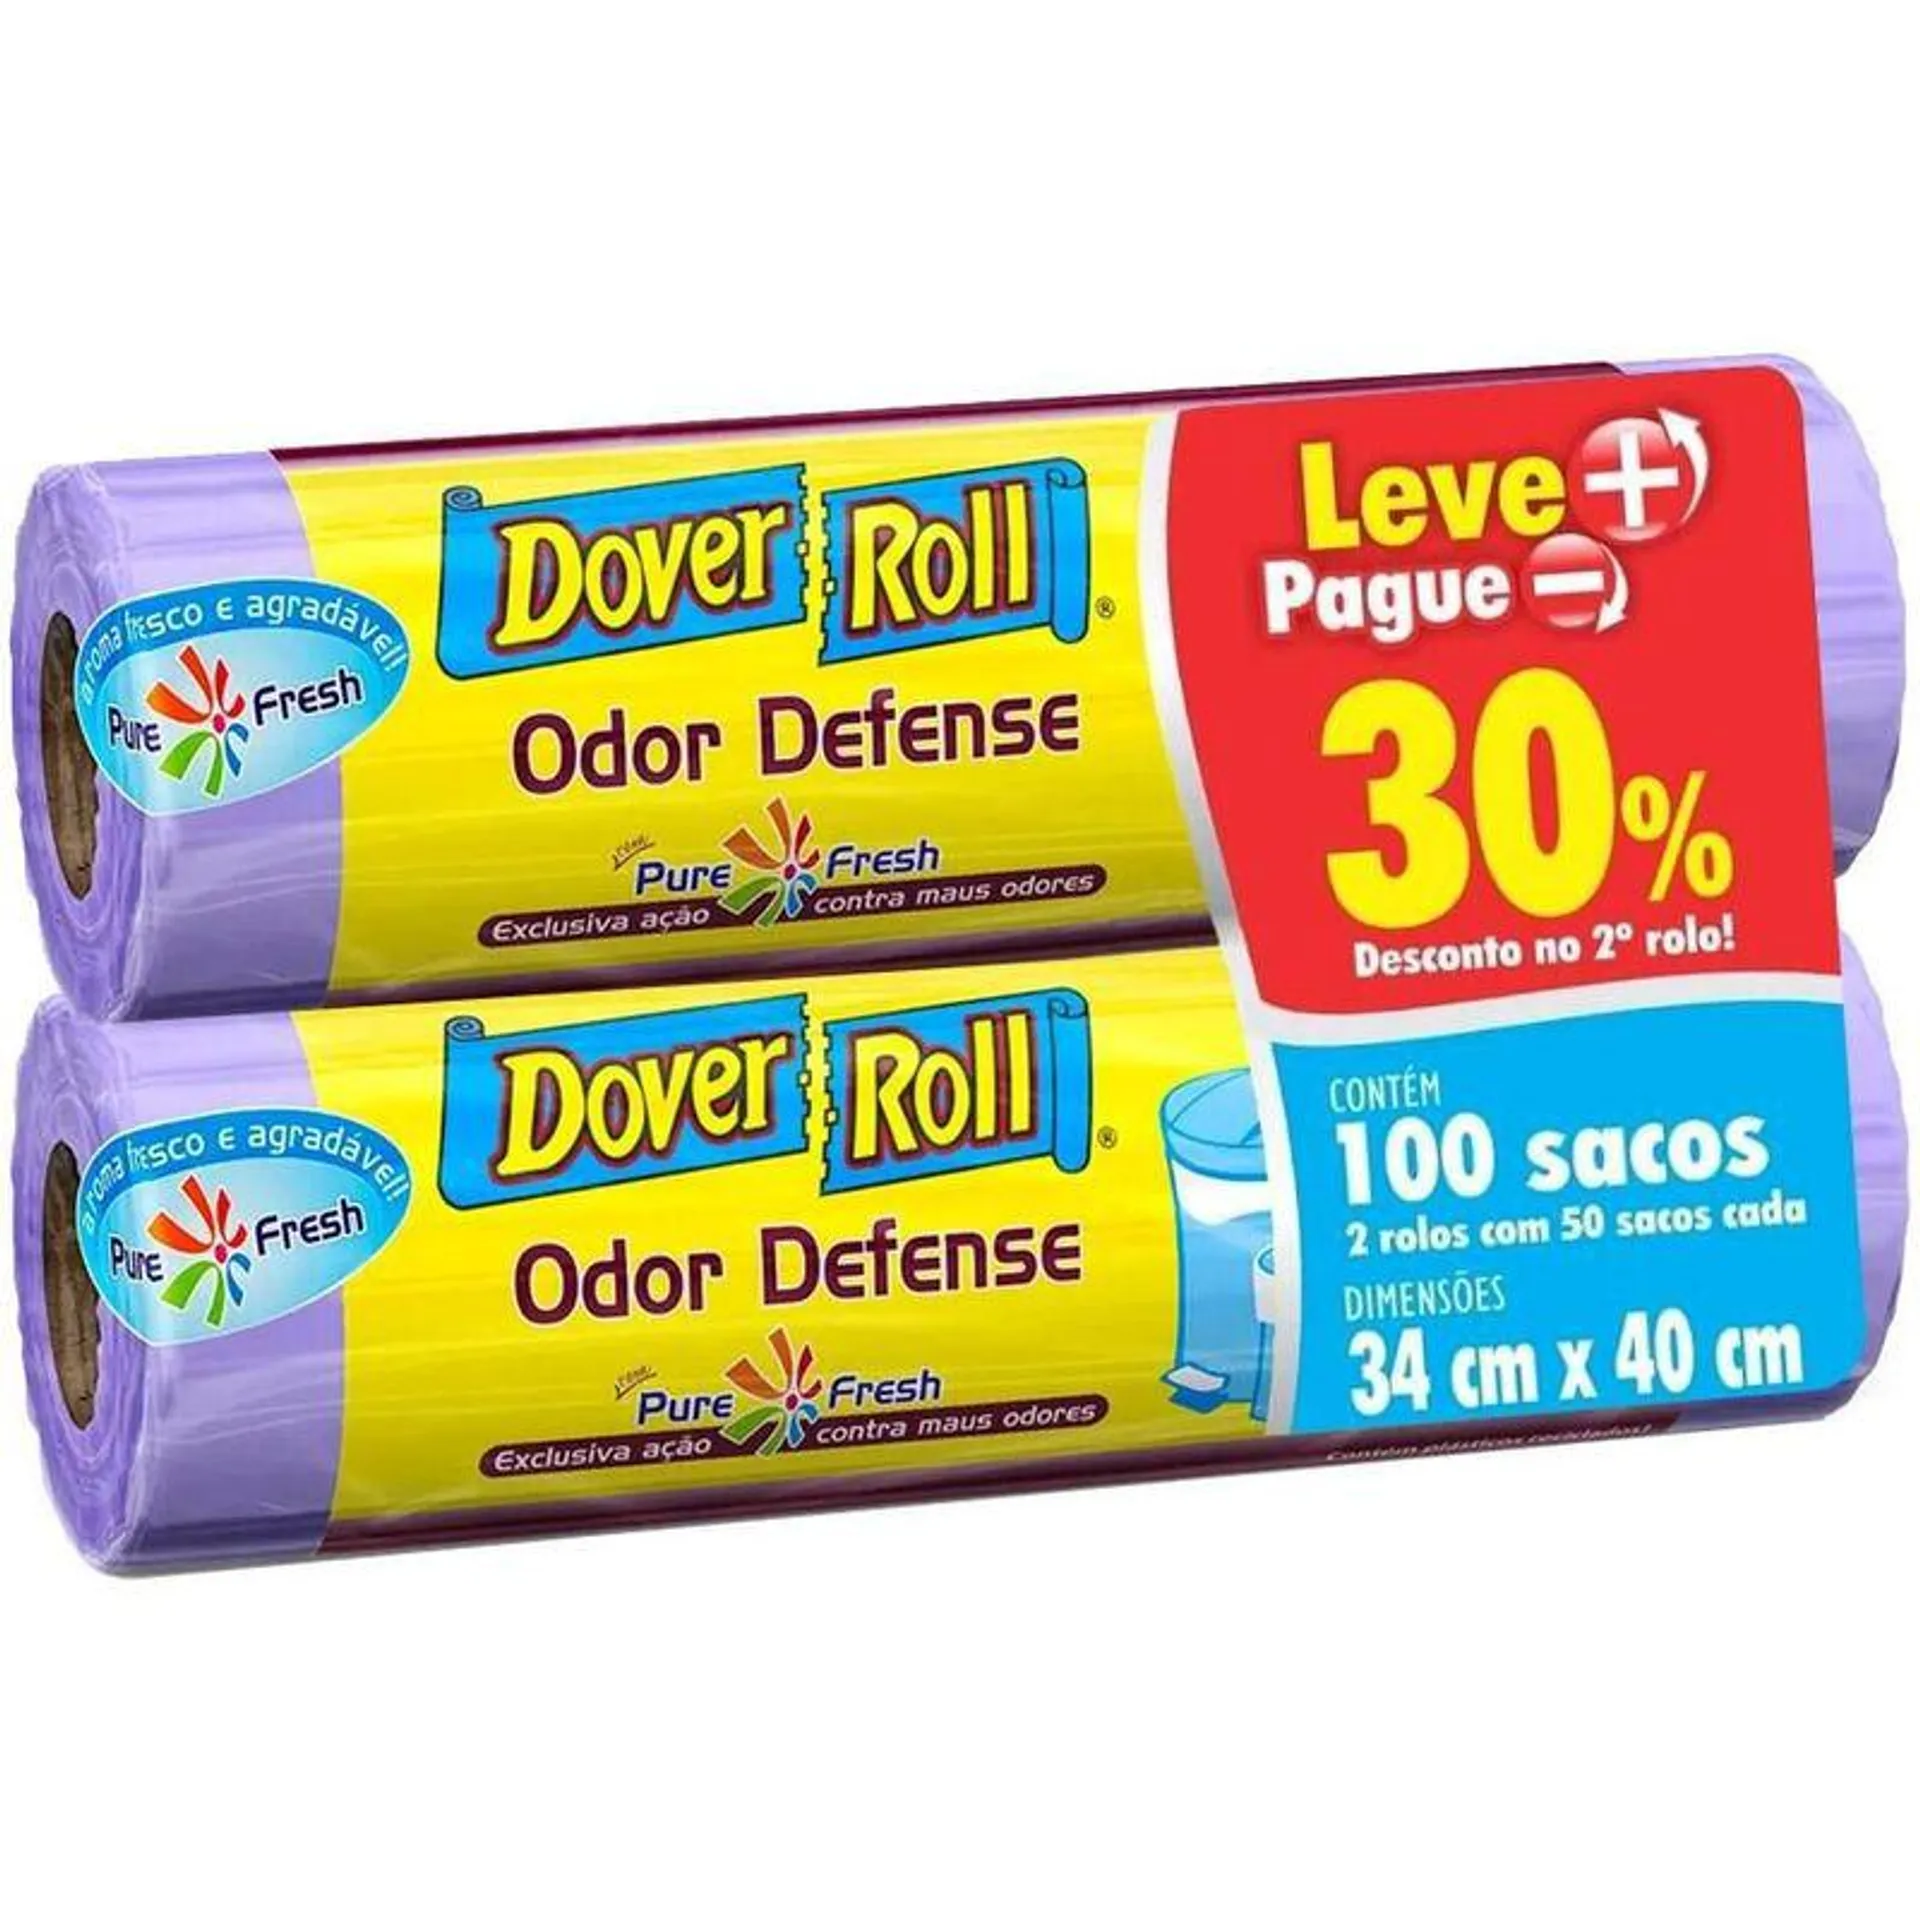 Saco Para Lixo Dover Roll Banheiro & Pia Odor Defense 30% De Desconto No 2º Rolo 34cm X 40cm Rolo Com 100 Unidades Leve + Pague -